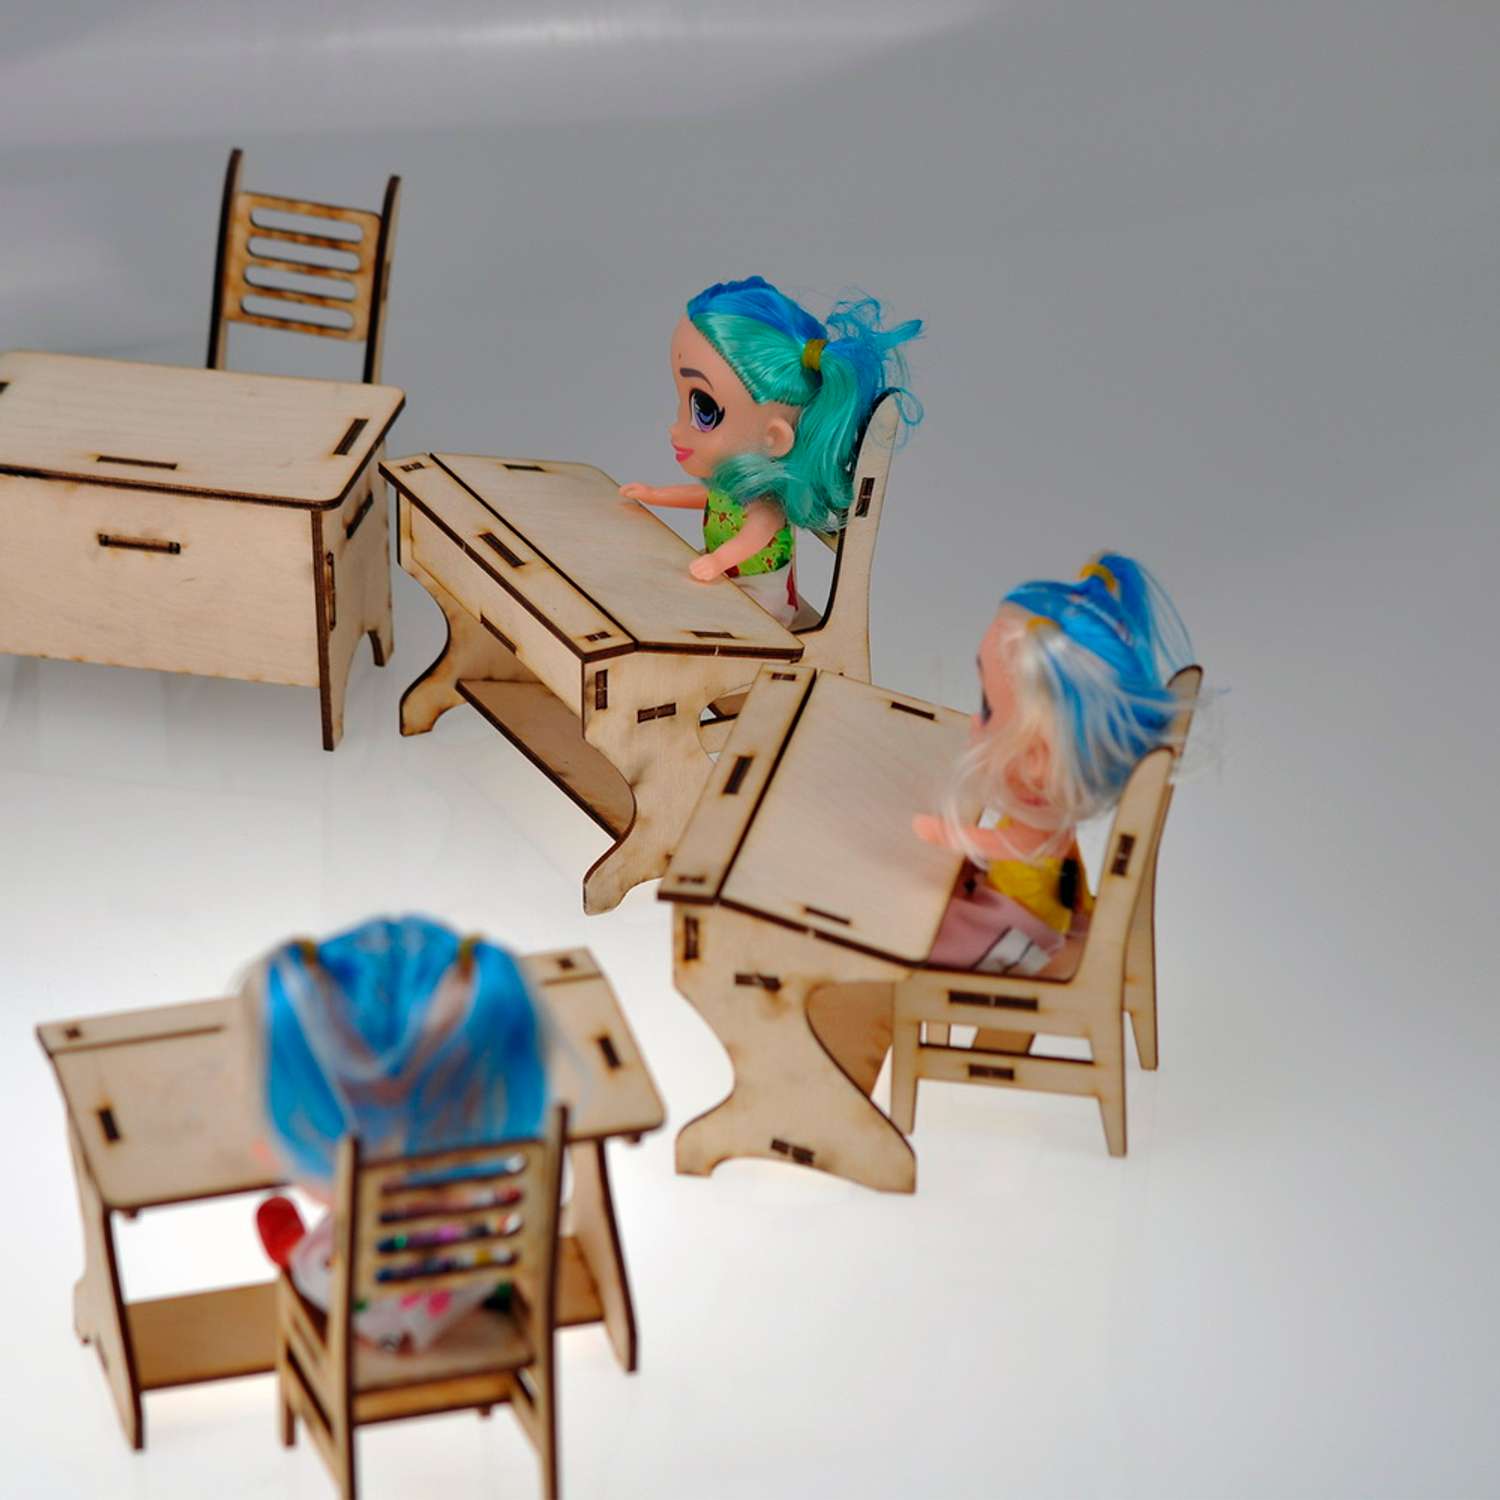 Игровой деревянный класс Amazwood 5 парт- учительский стол - доска - 6 стульев - 6 кукол AW1006 - фото 2